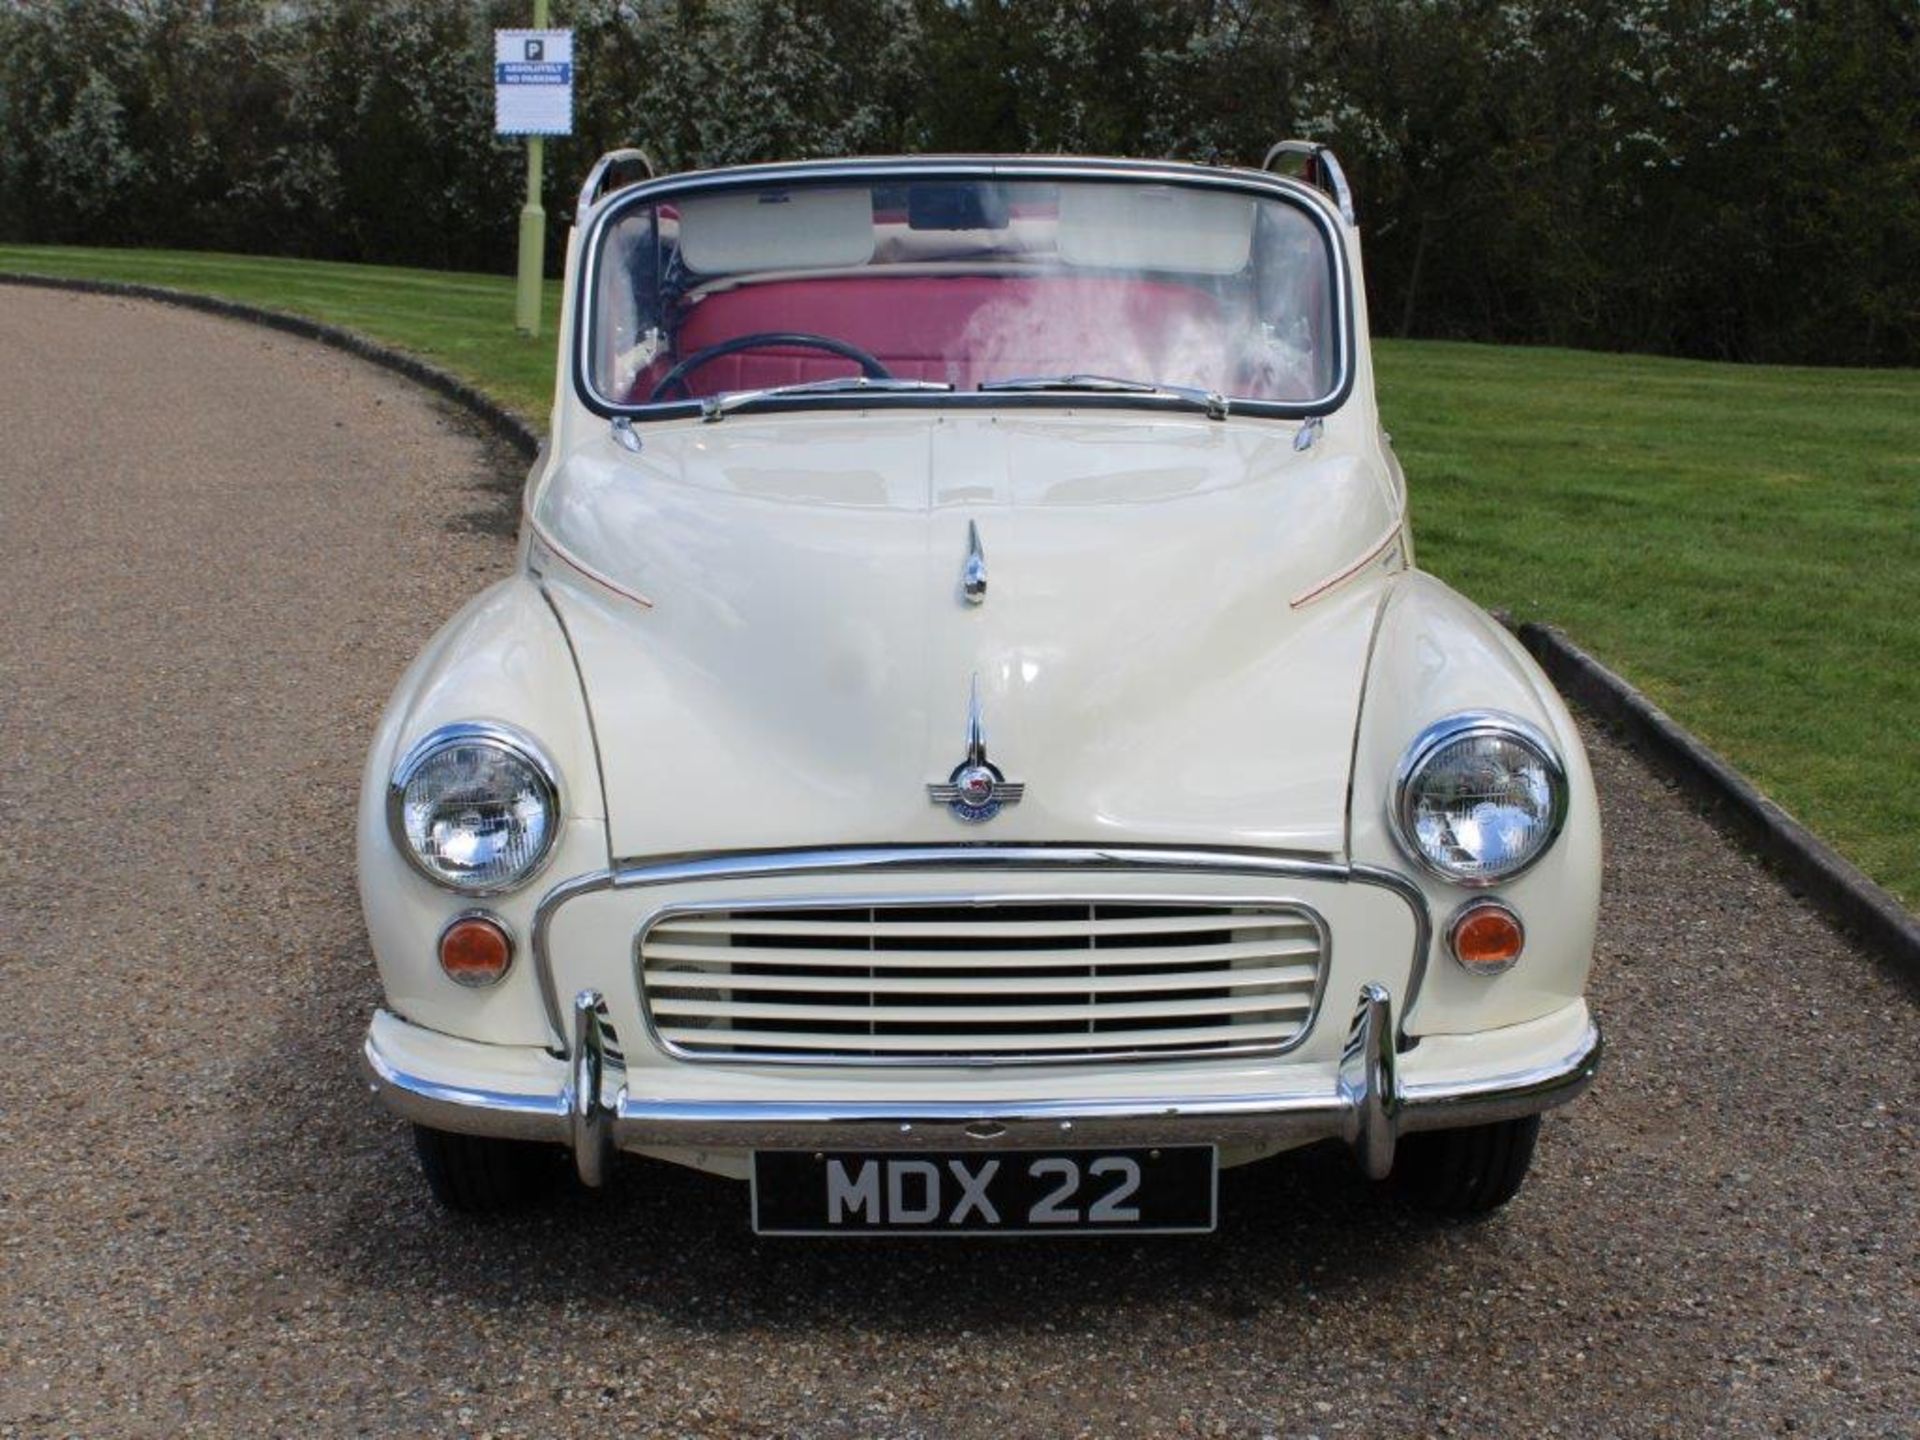 1960 Morris Minor Convertible - Image 2 of 39